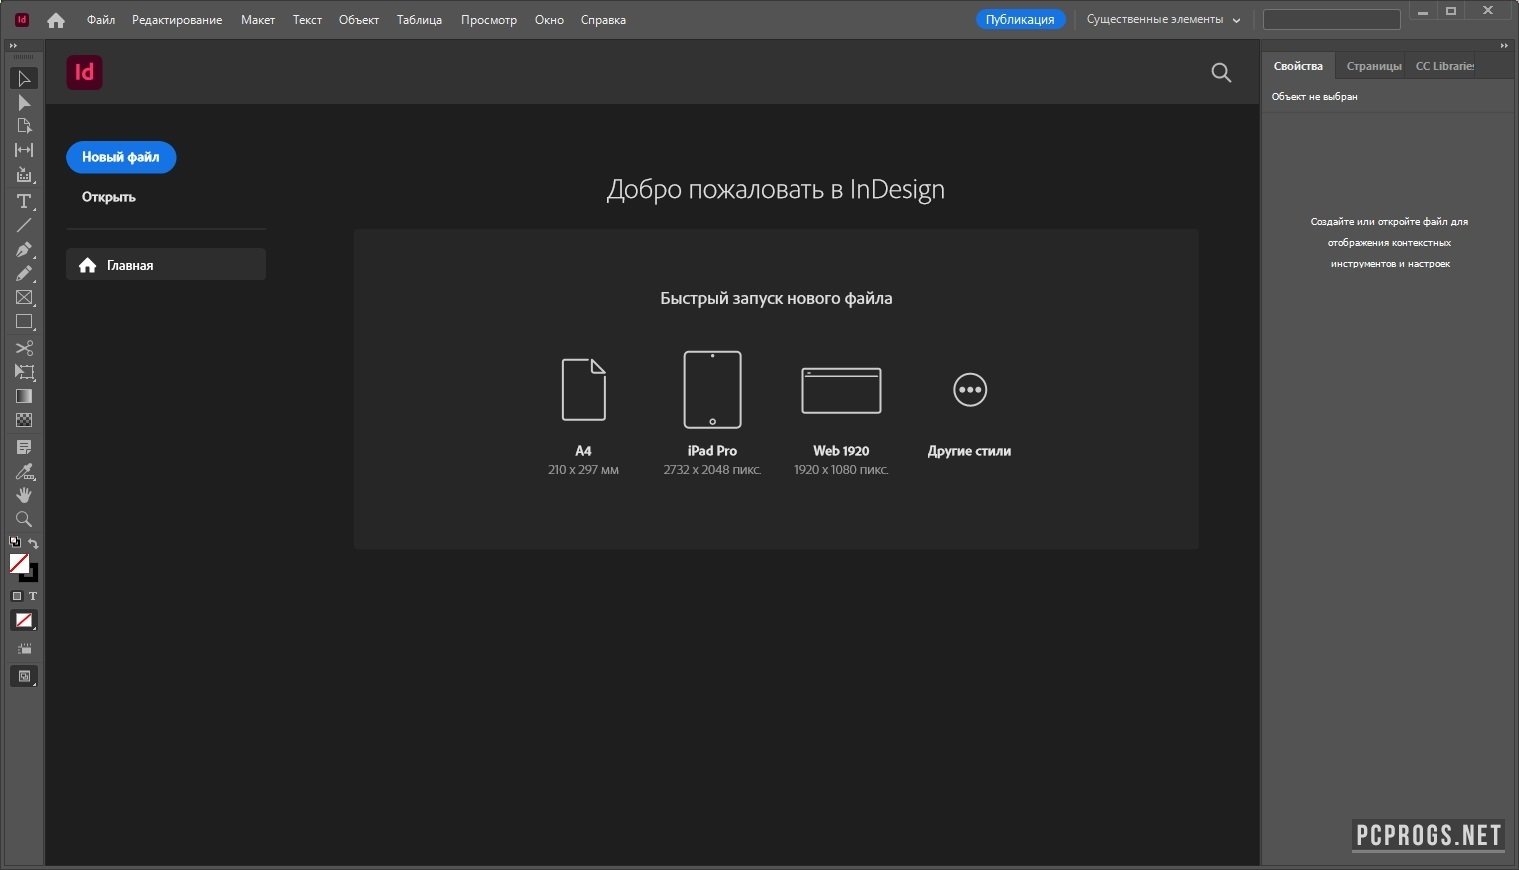 Adobe InDesign 2023 v18.5.0.57 download the last version for ipod